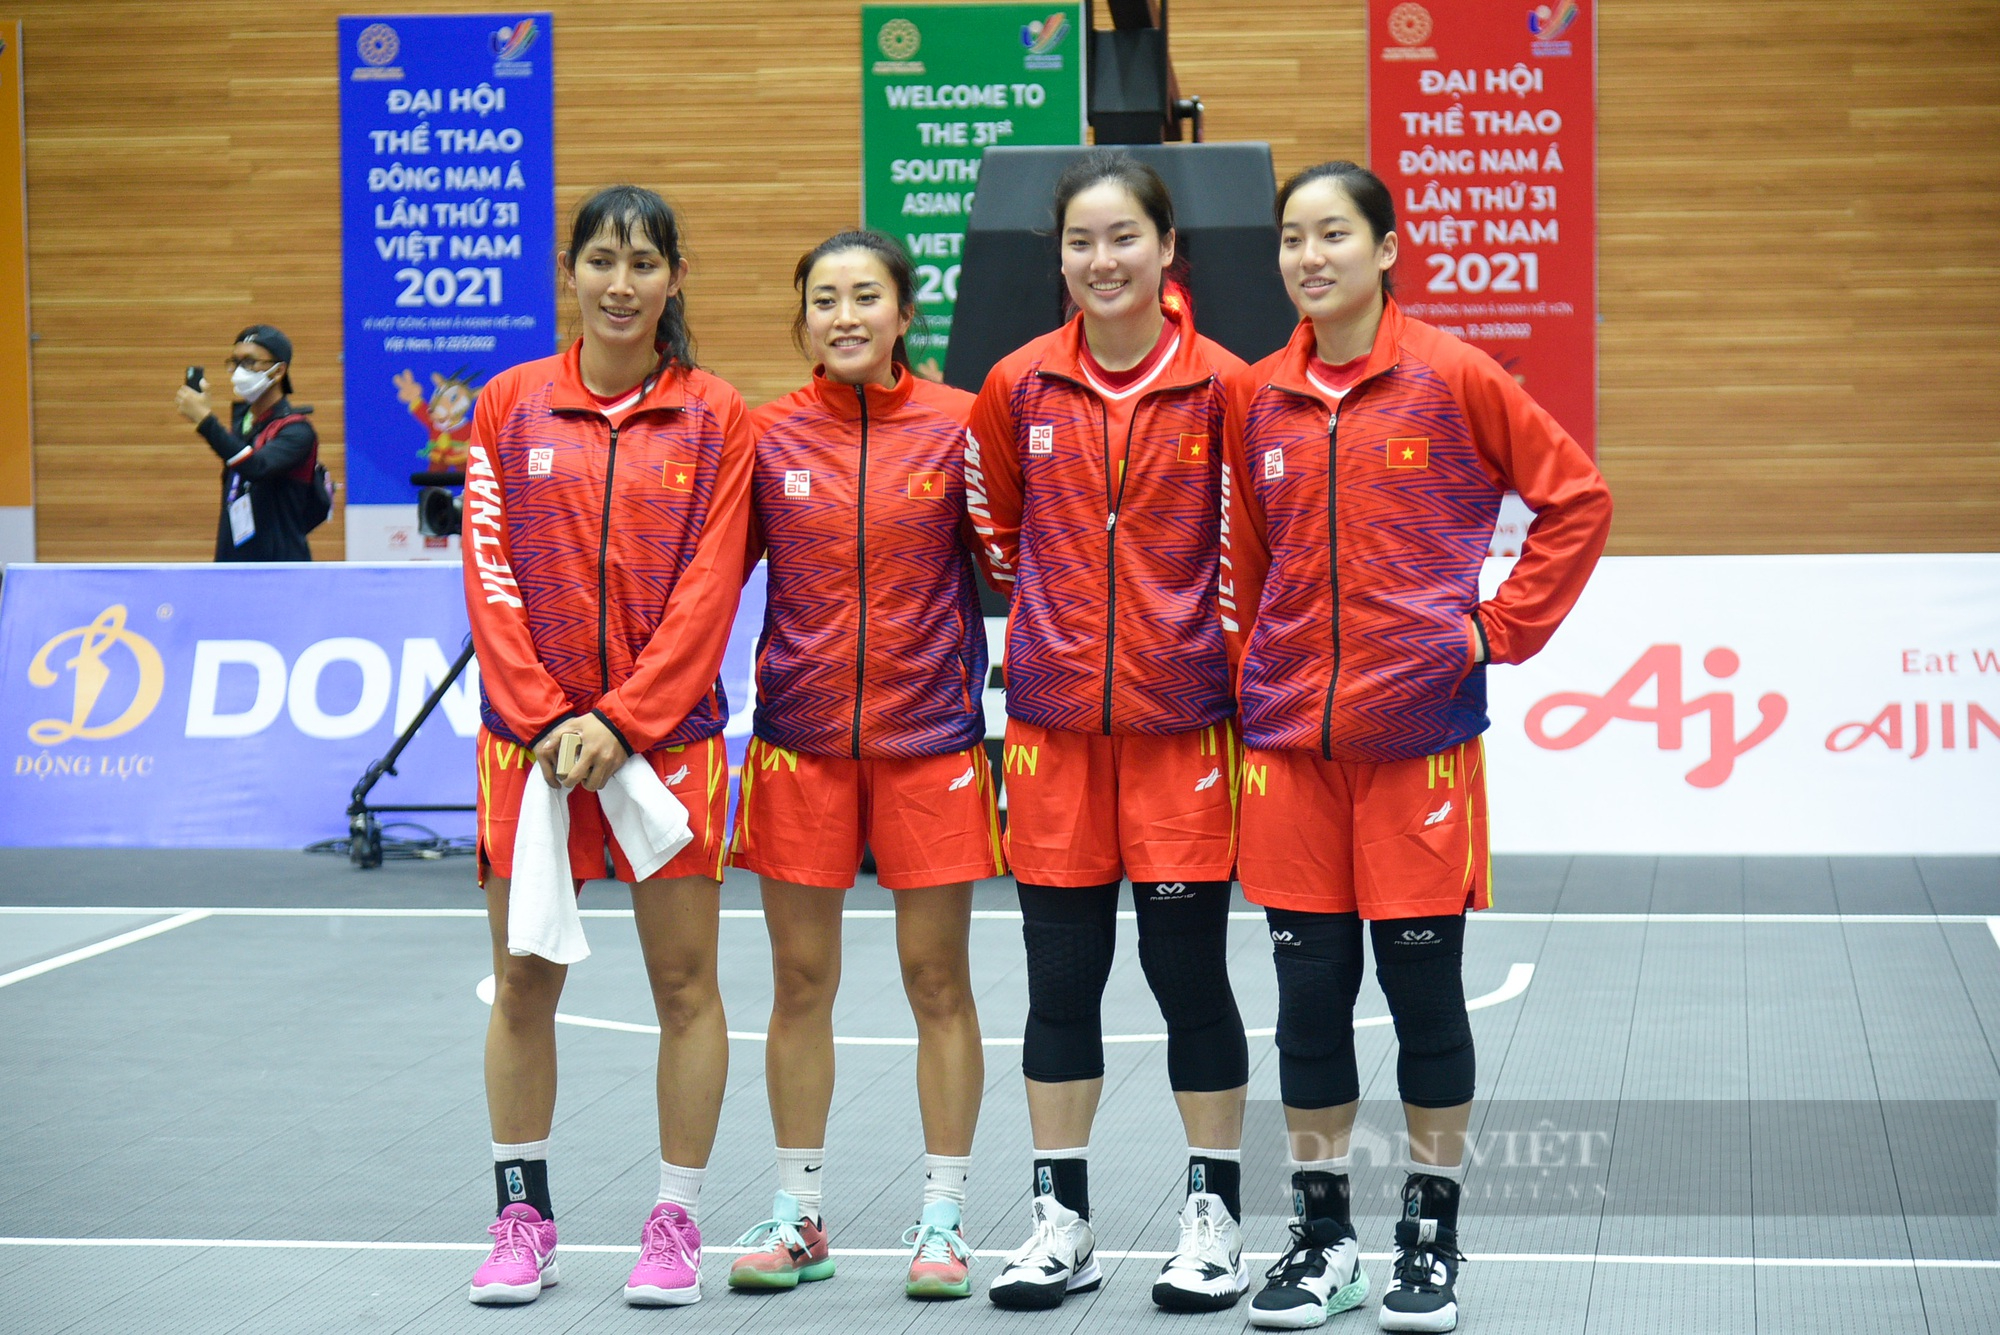 Đội tuyển nam Việt Nam giành chiến thắng trong trận đầu khởi tranh môn bóng rổ - Ảnh 7.